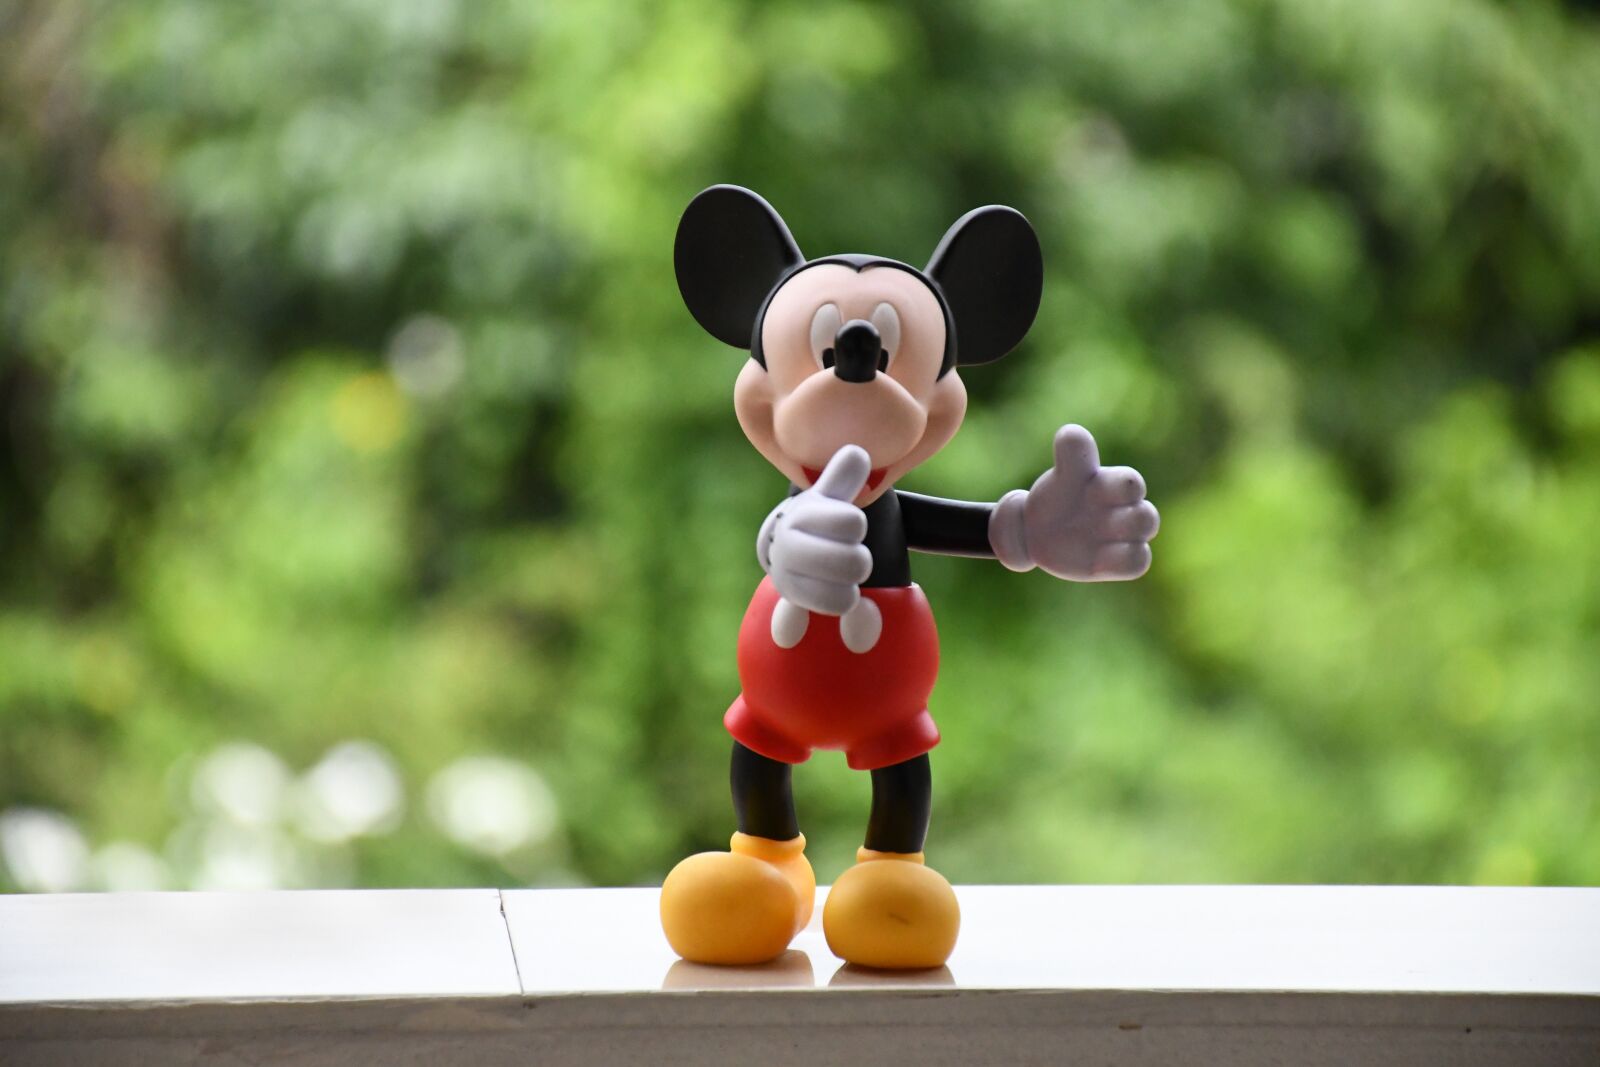 Nikon D7500 sample photo. Micky mouse, toy, disney photography